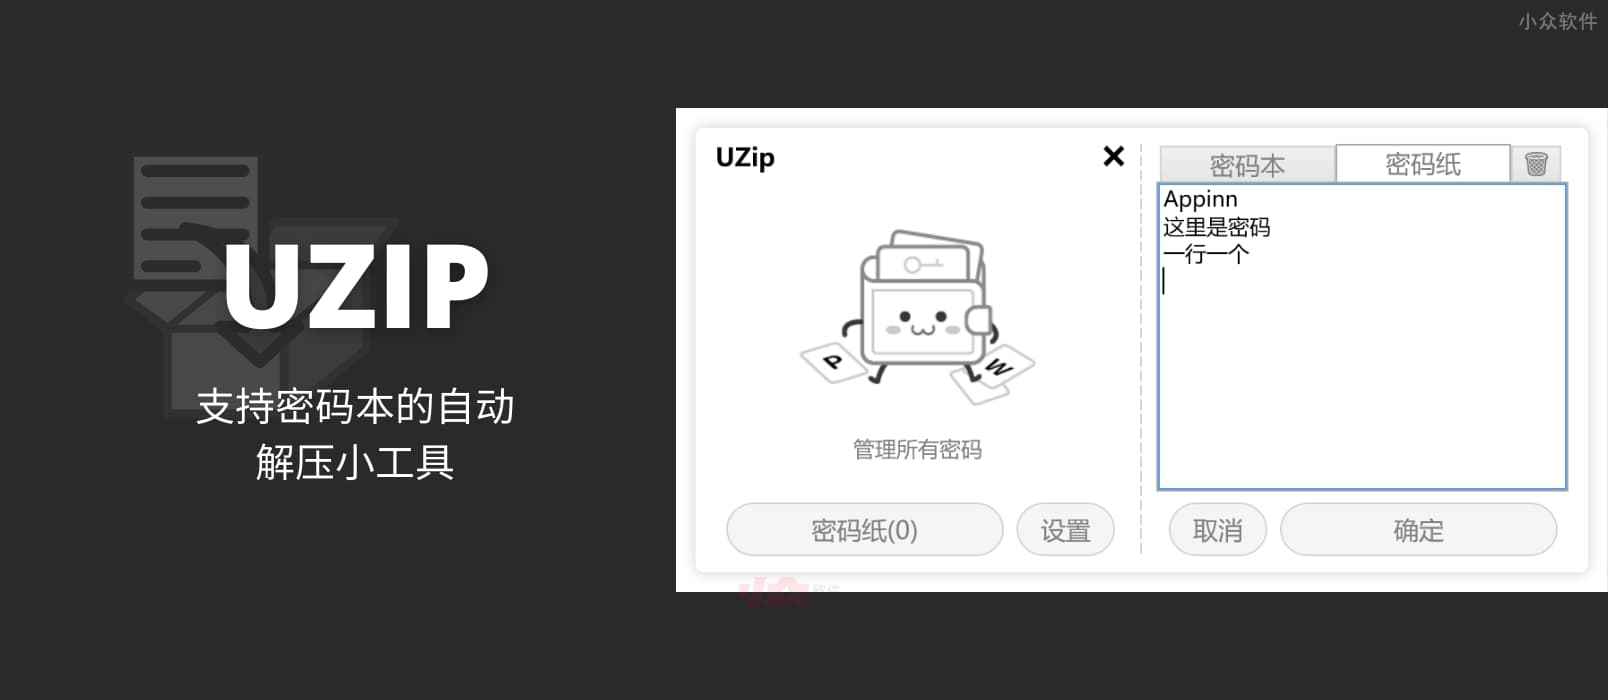 UZIP - 支持密码本，多密码自动解压缩加密文件[Windows] 1